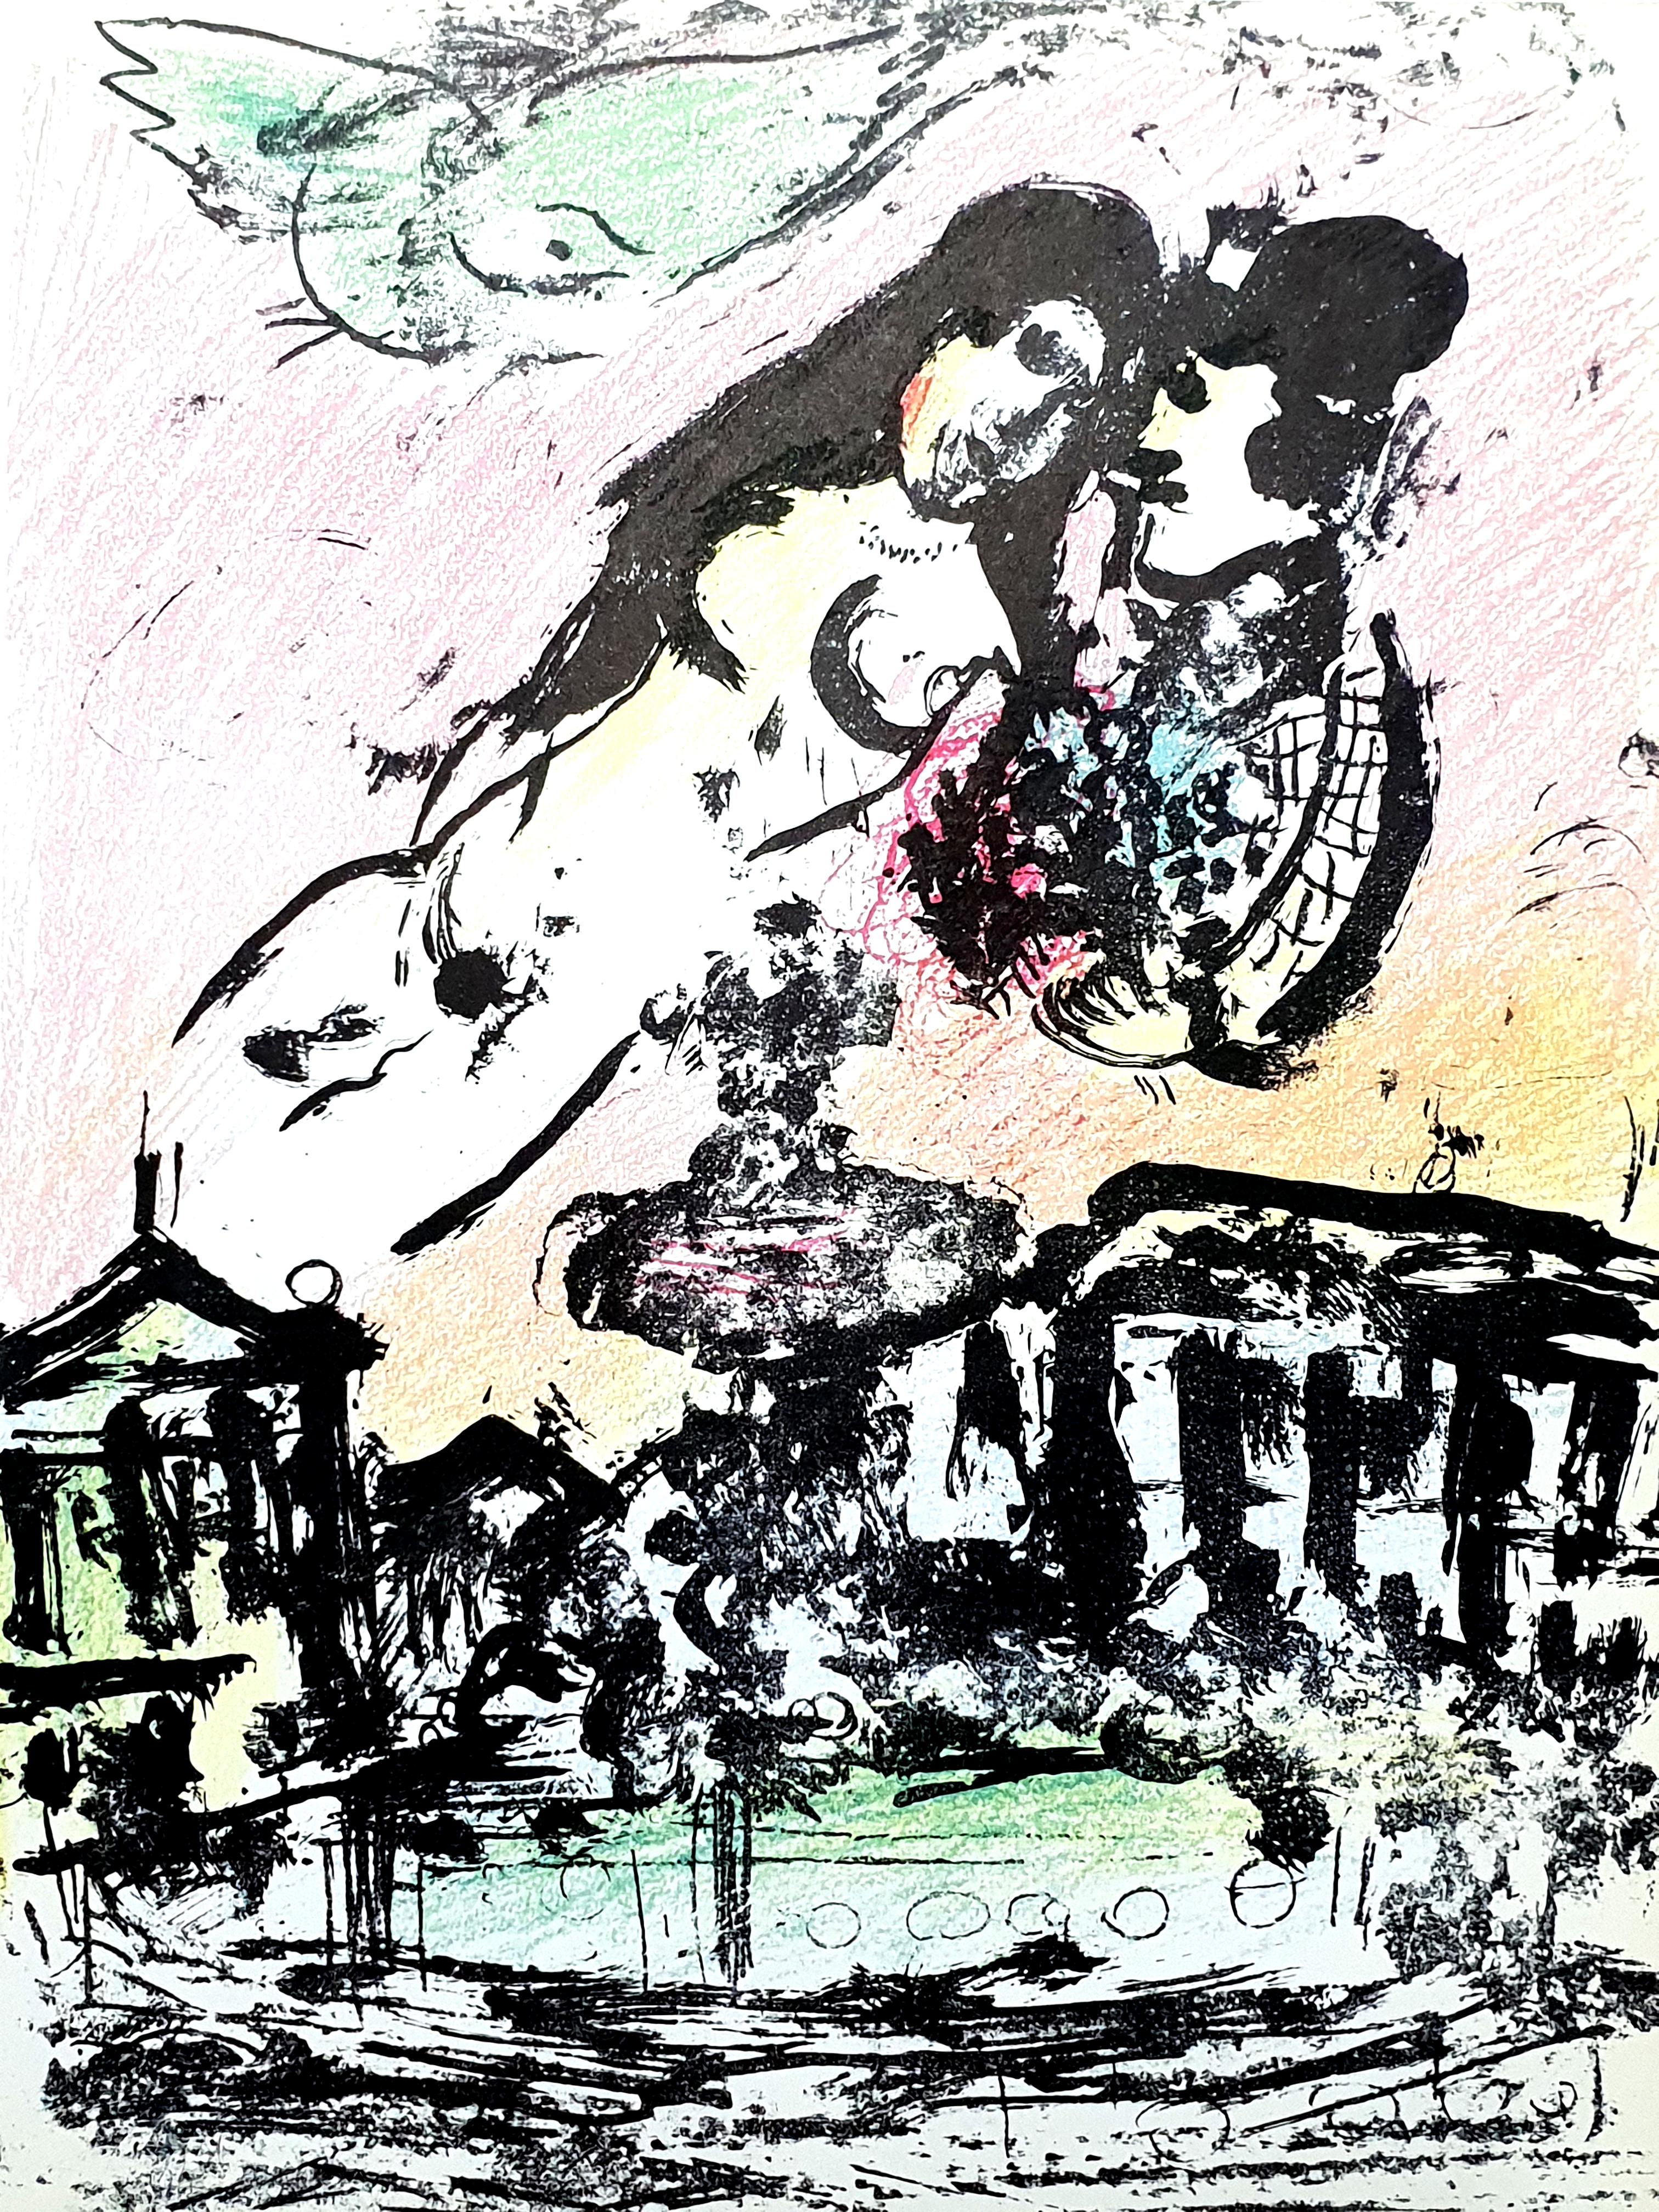 Marc Chagall
Original-Lithographie
1963
Abmessungen: 32 x 24 cm
Referenz: Chagall Lithographe 1957-1962. VOLUME II.
Zustand: Ausgezeichnet

Marc Chagall  (geboren 1887)

Marc Chagall wurde 1887 in Weißrussland geboren und entwickelte schon früh ein